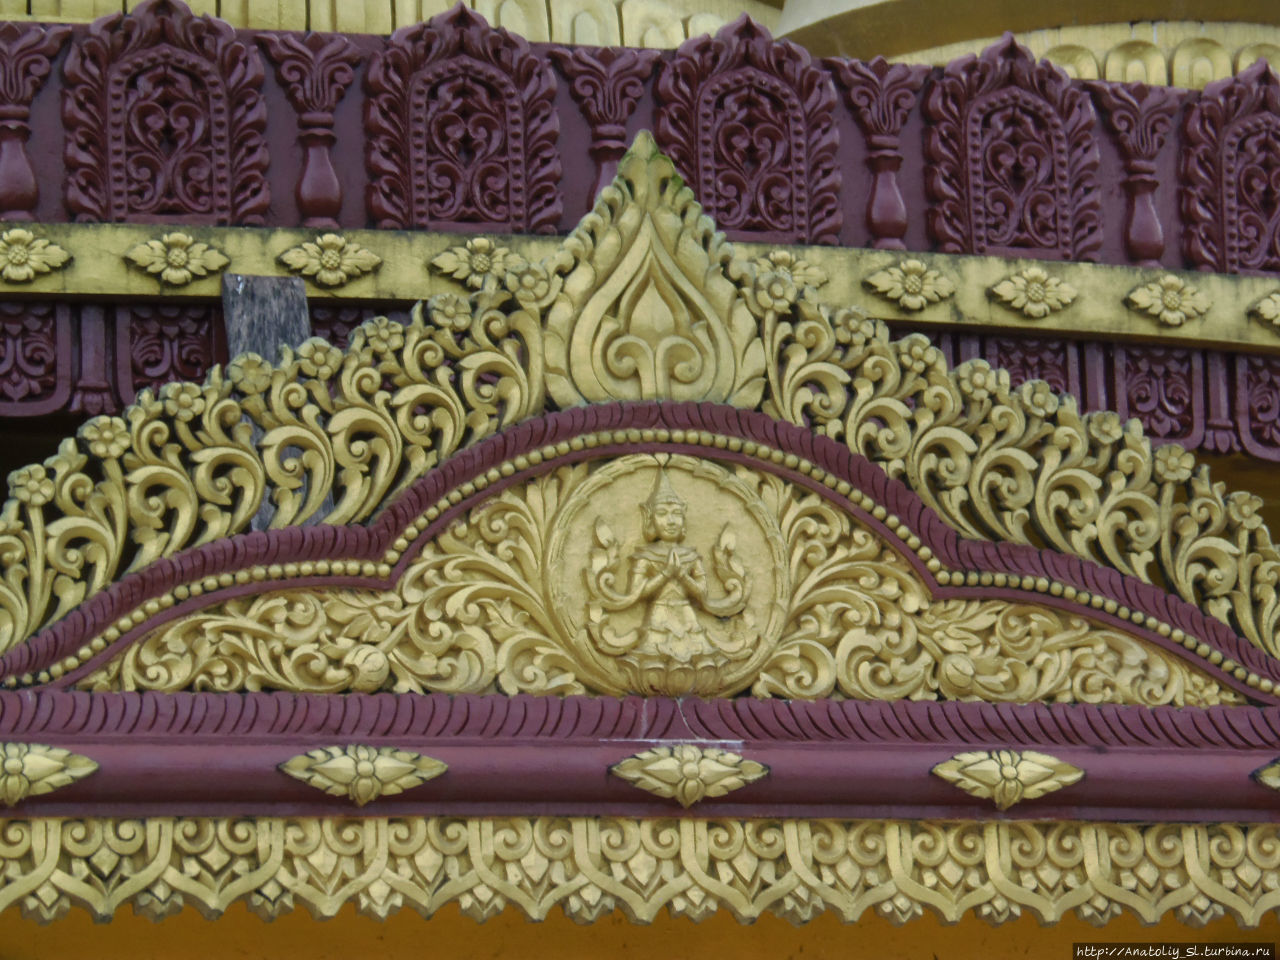 Бандарба́н. Монастырь Будда дхату Джади или Золотой Храм Бандарбан, Бангладеш